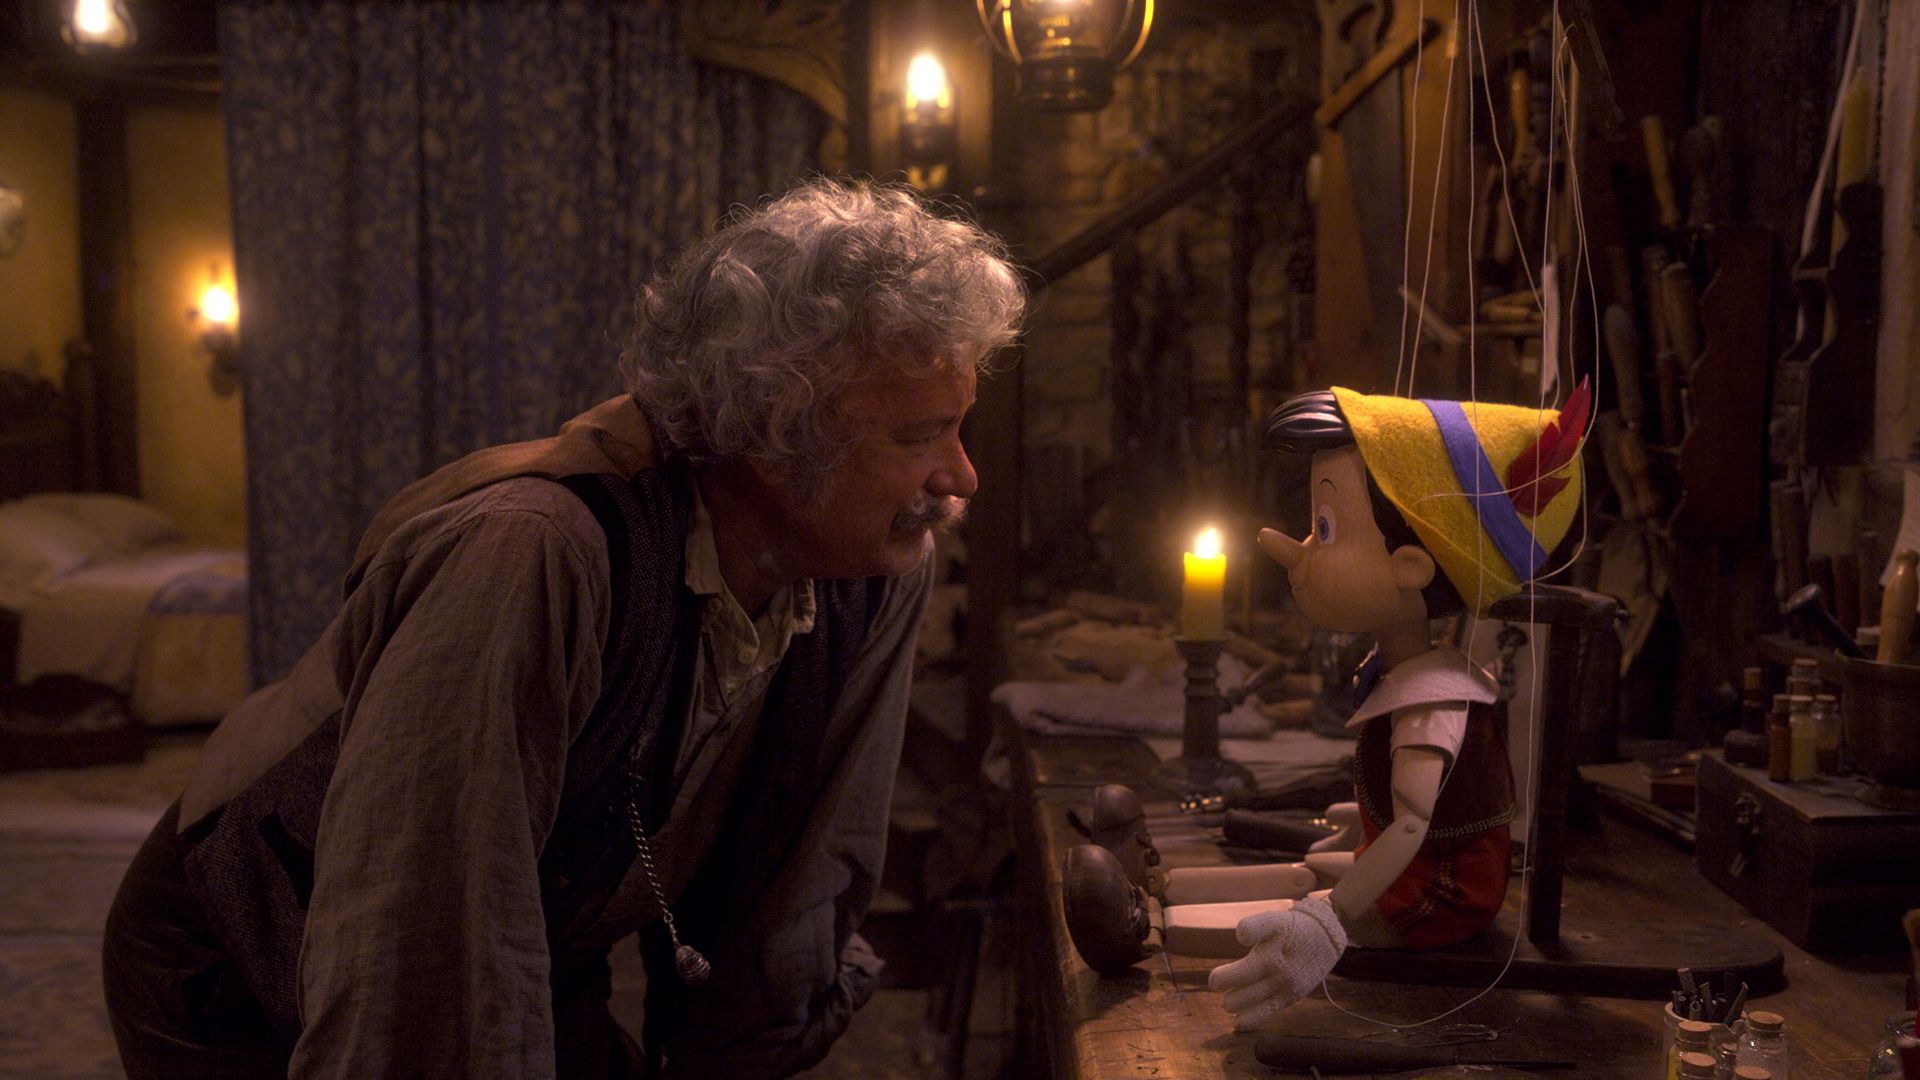 تام هنکس در نقش پدر ژپتو در حال تماشا پینوکیو در فیلم Pinocchio